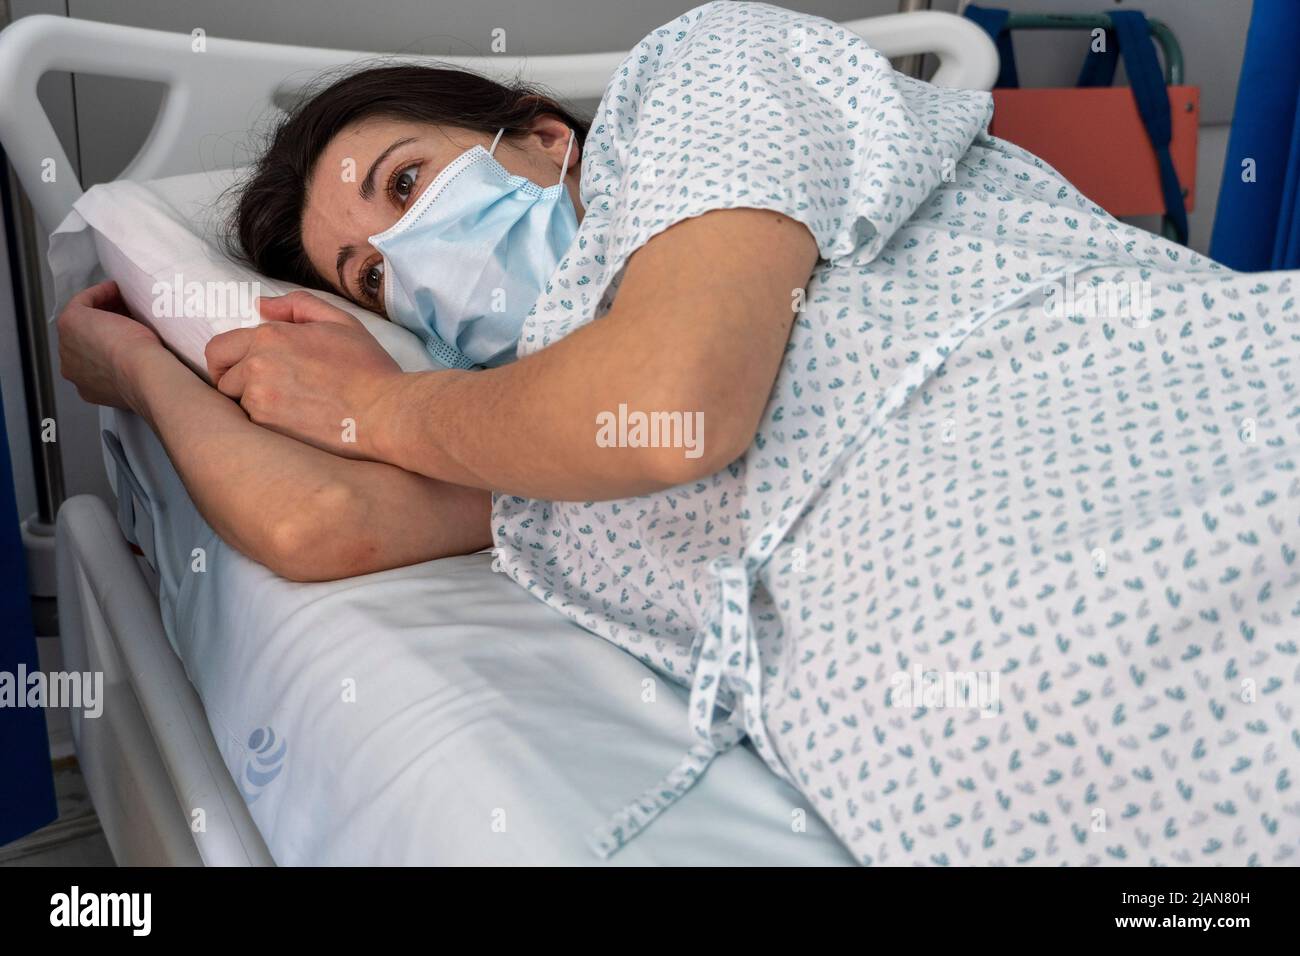 Im Krankenhaus eingewiesenen jungen Frau, die eine Gesichtsmaske trägt, während sie in einem Krankenhausbett liegt Stockfoto